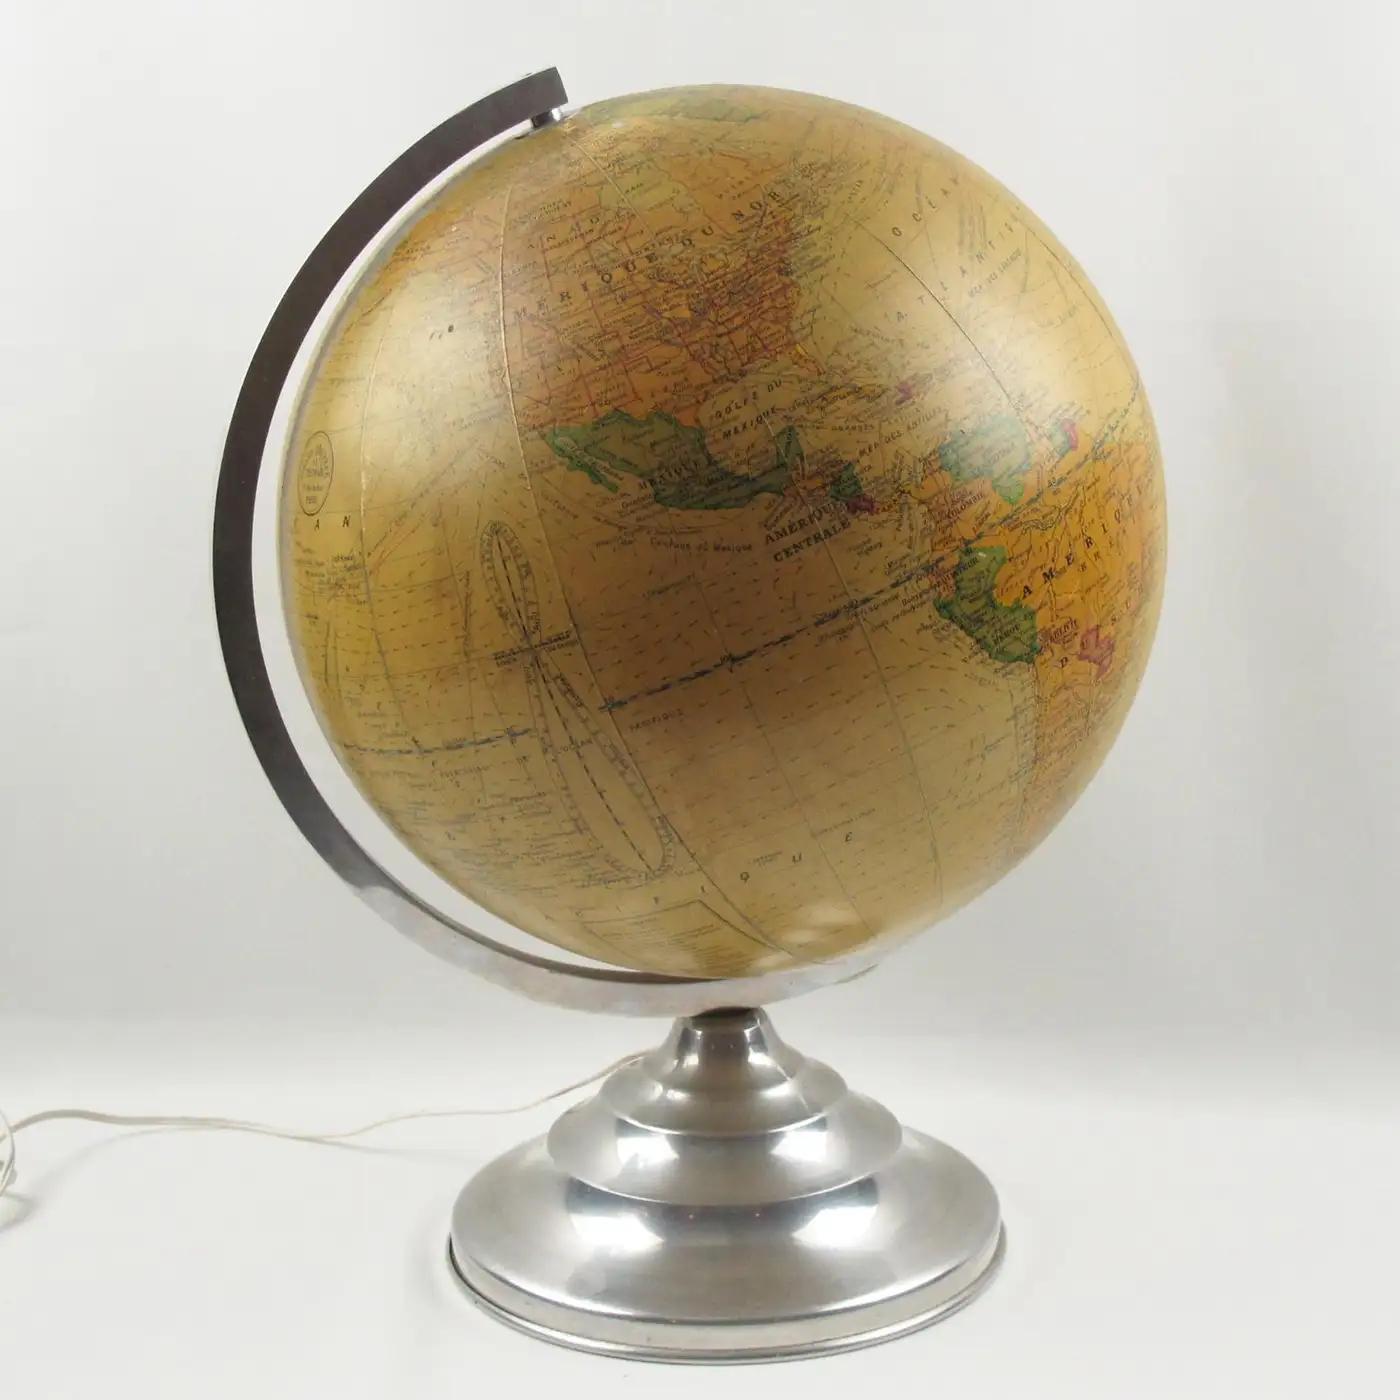 Girard, Barrere et Thomas Paris ont fabriqué cet impressionnant globe terrestre lumineux dans les années 1950. Il a été conçu par le géographe J. Forest. Ce globe de bibliothèque en verre est recouvert de papier imprimé et tourne sur un support en